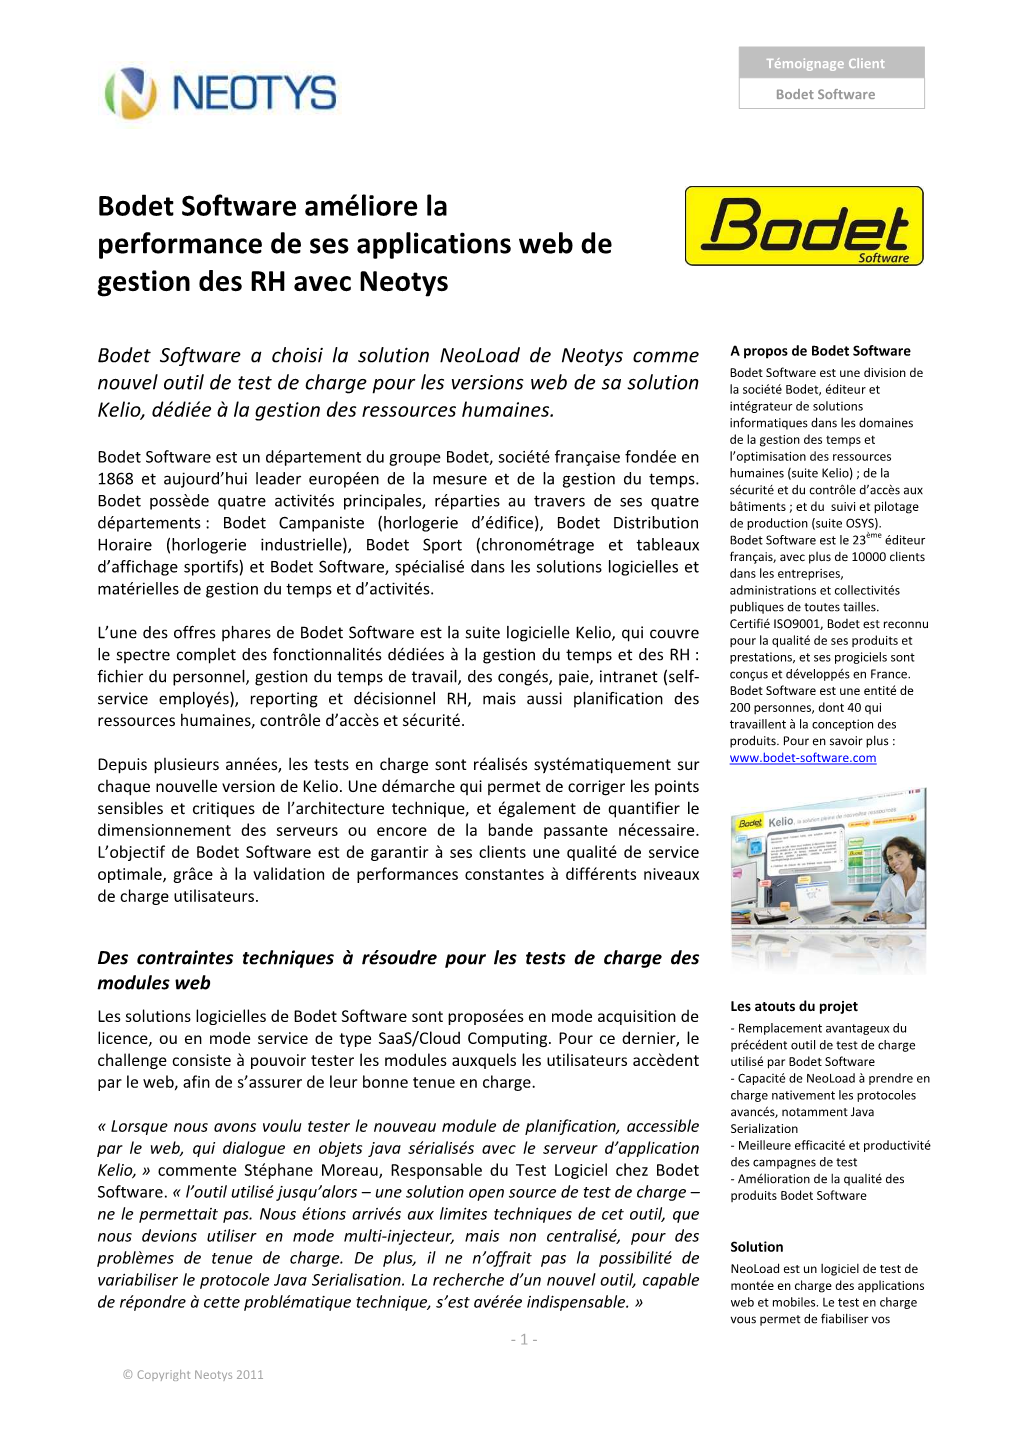 Bodet Software Améliore La Performance De Ses Applications Web De Gestion Des RH Avec Neotys